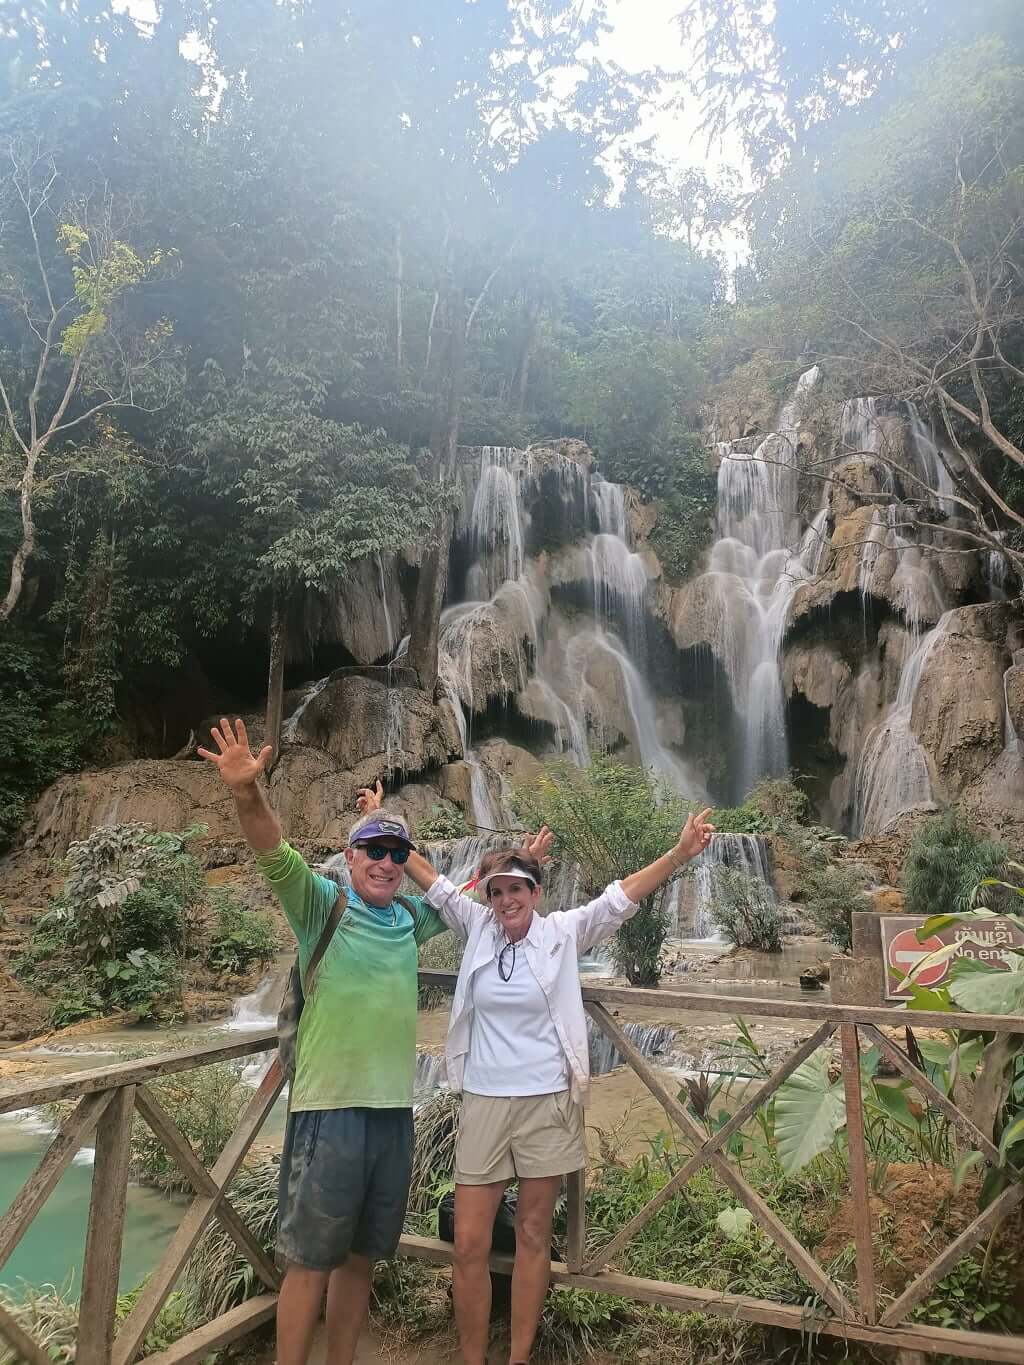 authentic-laos-itinerary-10-days-kuang-si-waterfall-luang-prabang-1-jpg